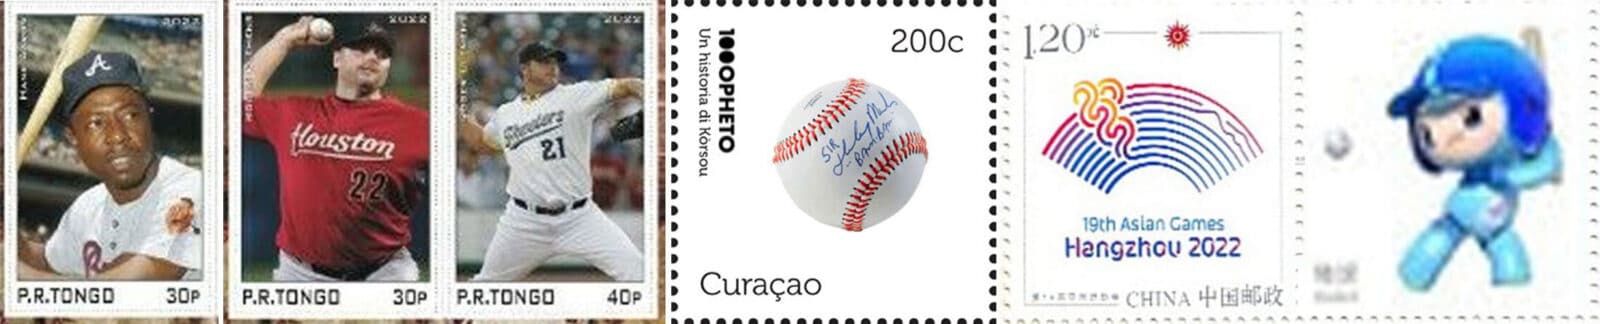 2022 Baseball Postage Stamps header